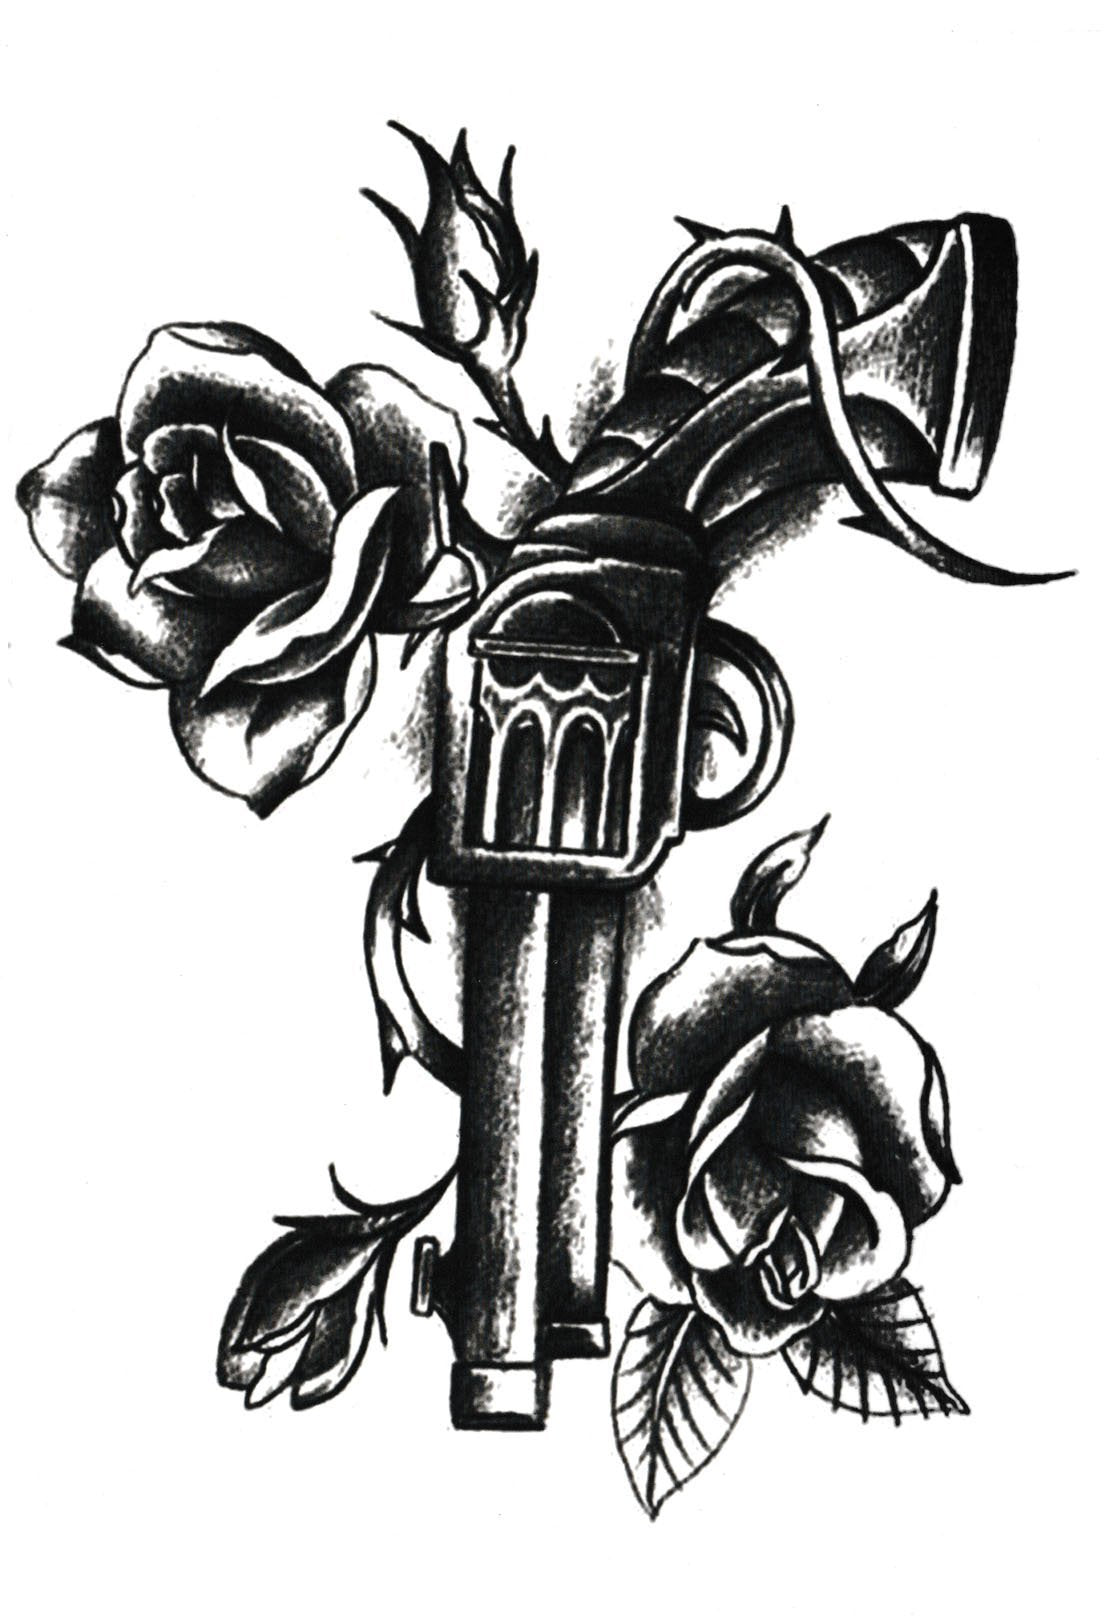 Gun & roses 2